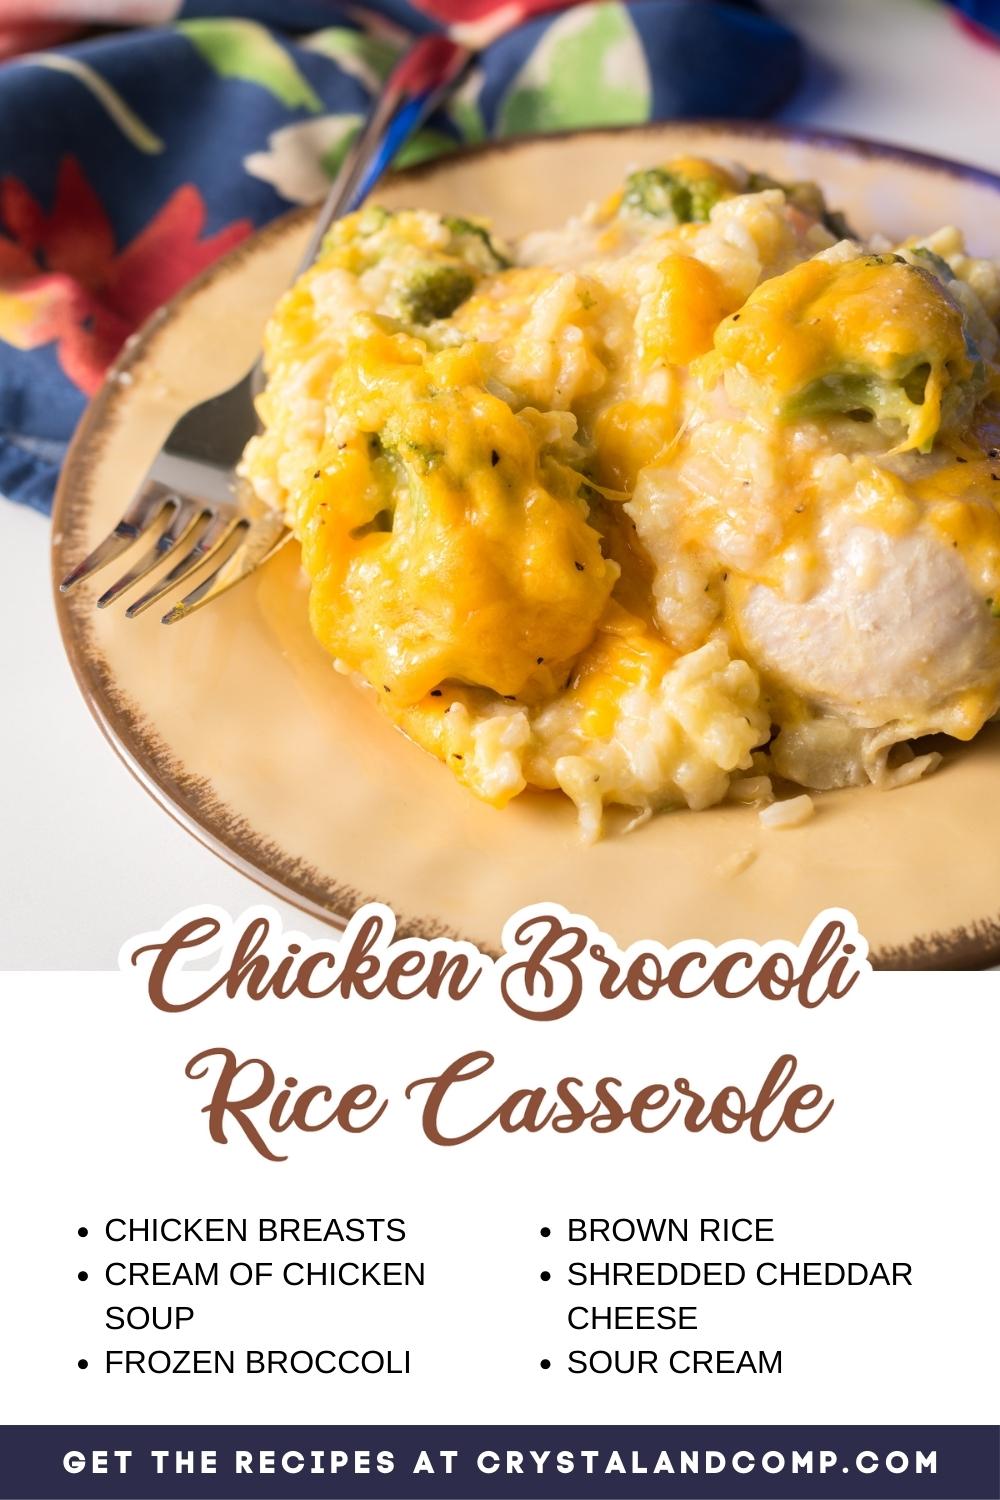 chicken broccoli rice casserole ingredients list